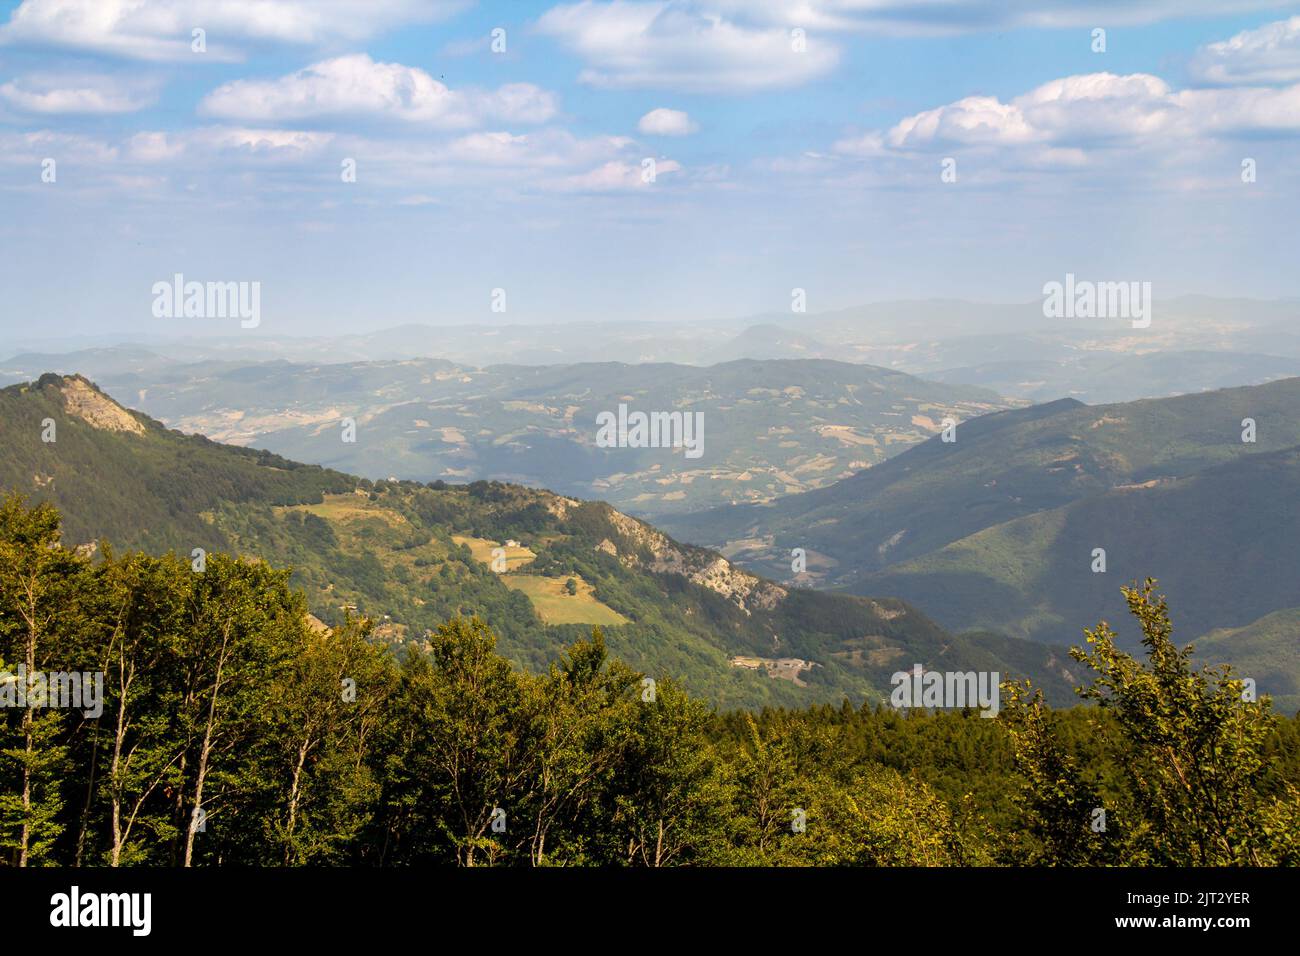 Bella vista panoramica in estate sul Monte Cimone nei pressi del Lago di Ninfa. Paesaggio dell'Appennino Tosco-Emiliano di Sestola, provincia di Modena, Italia Foto Stock